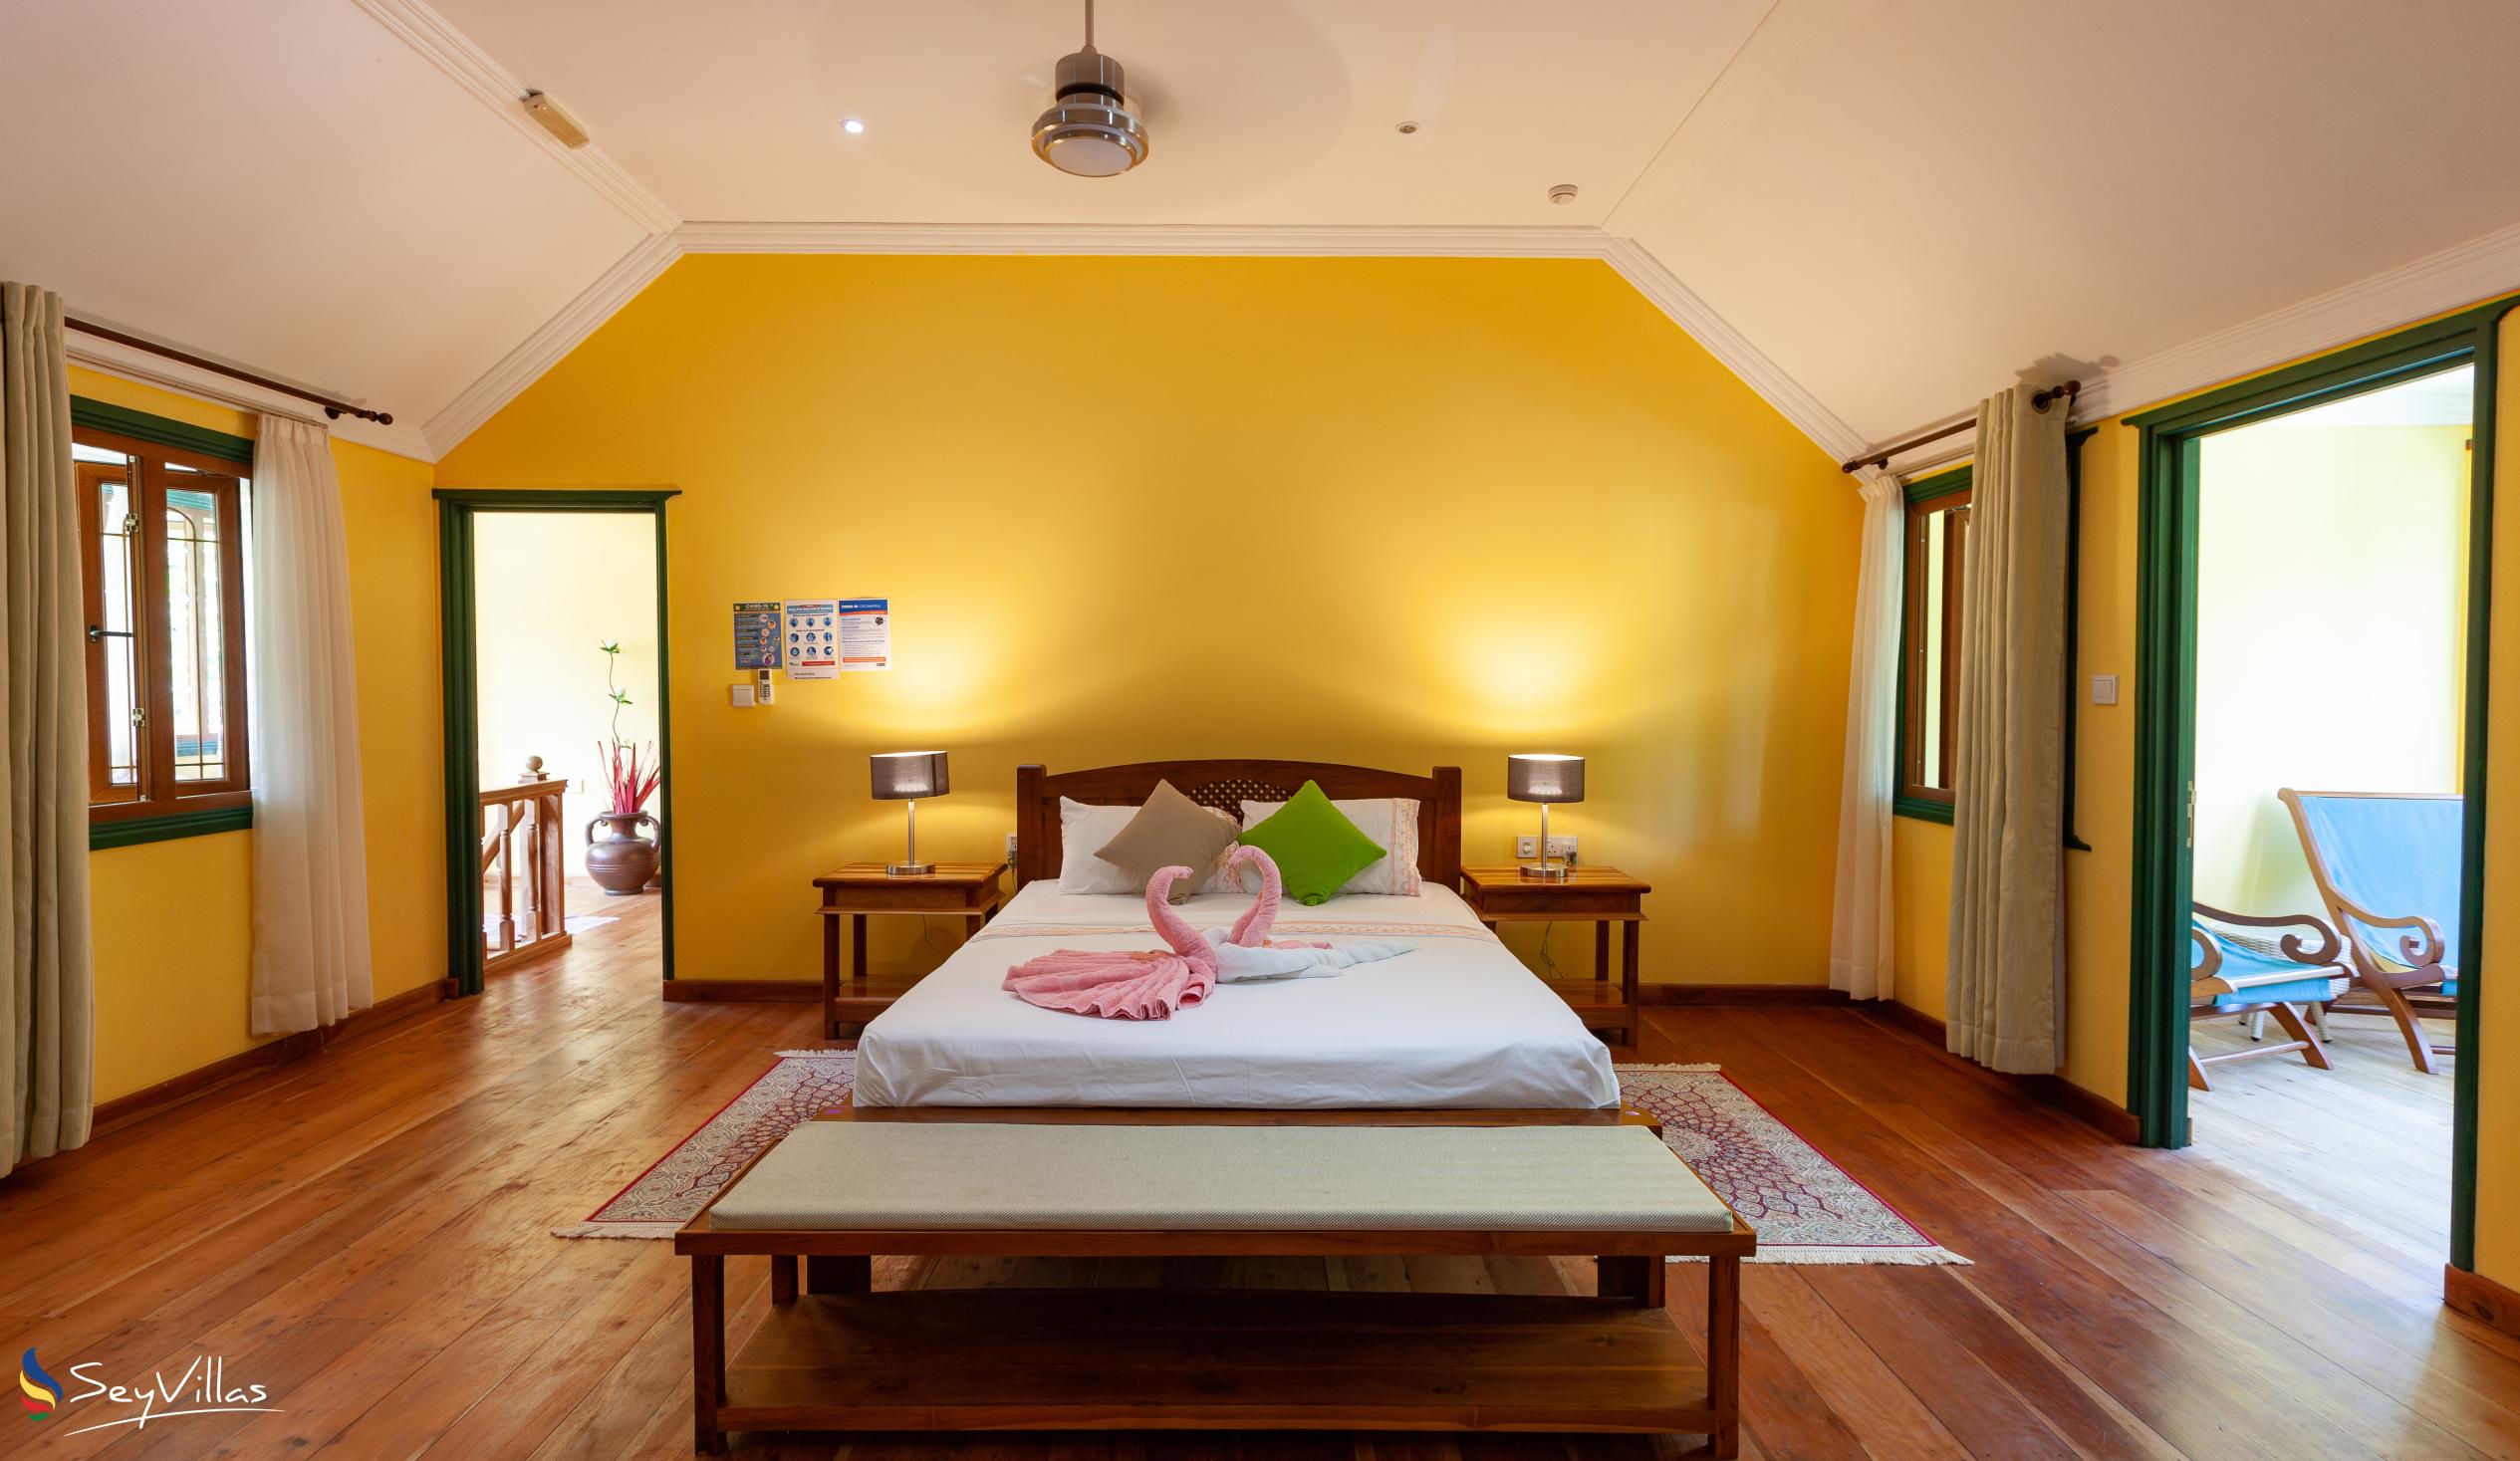 Photo 74: Pension Michel - Villa Roche Bois - Family Room - La Digue (Seychelles)